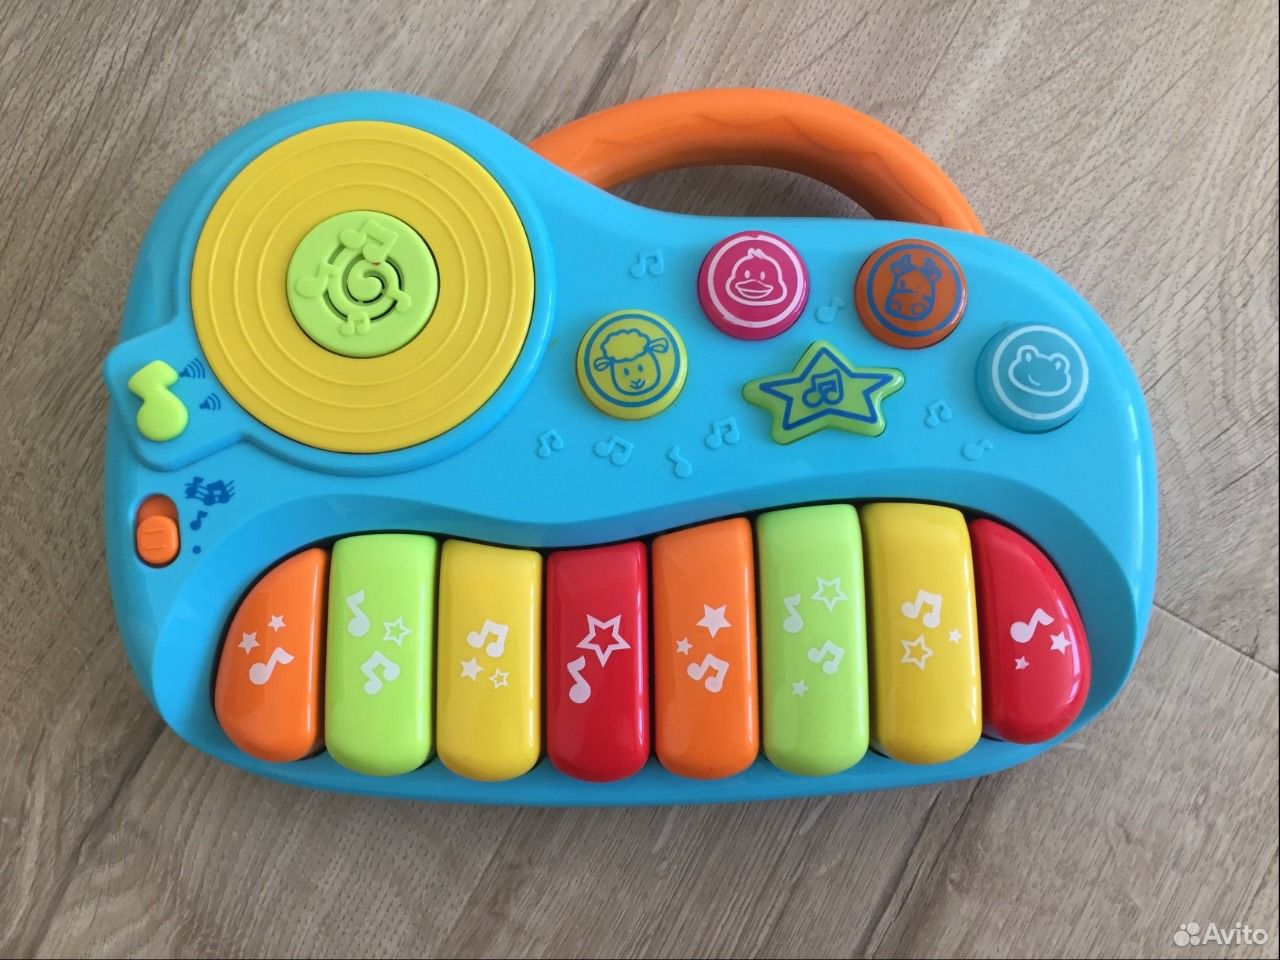 Детское пианино BABYGO. Синтезатор BABYGO джунгли. Развивающий коврик с пианино BABYGO. Оранжевое детское пианино Baby go.